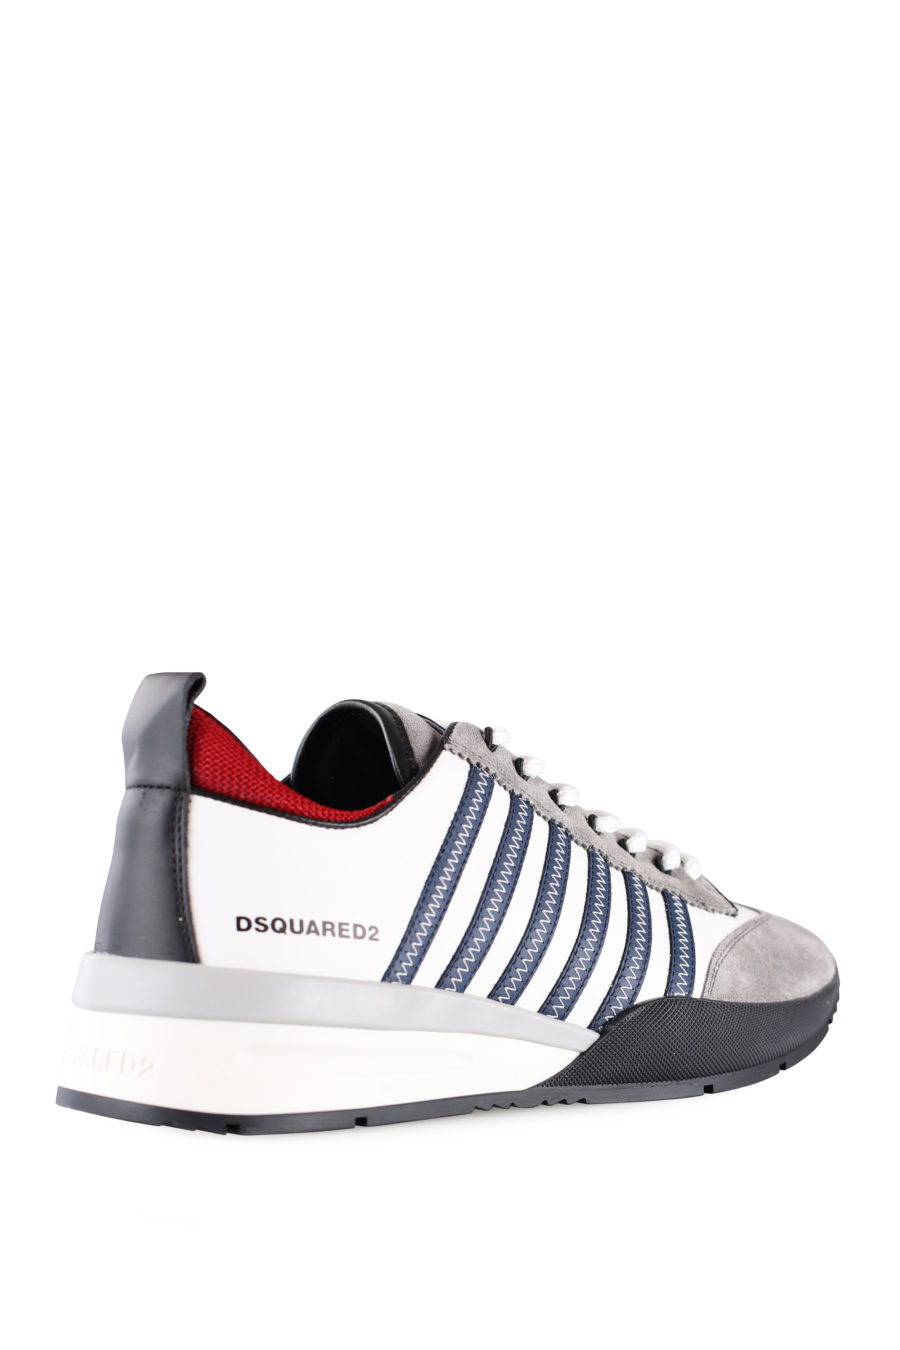 Zapatillas blancas y grises con líneas azules y detalle en rojo - IMG 0010